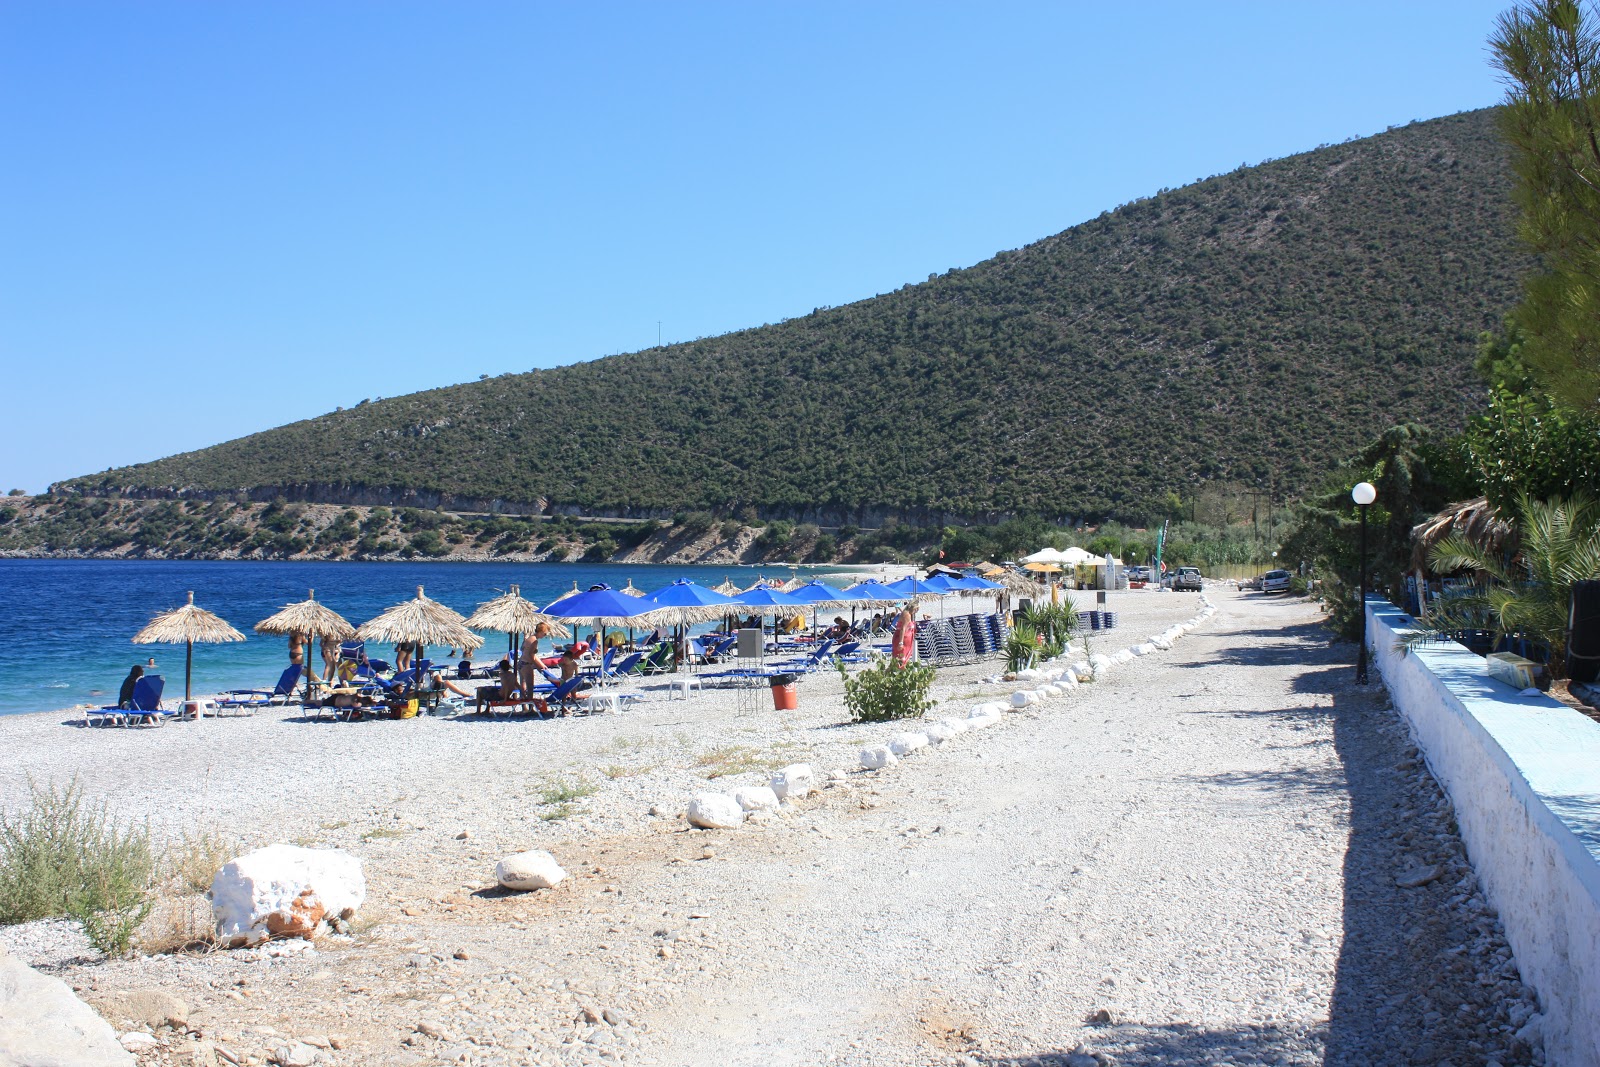 Foto af Kryoneri beach - populært sted blandt afslapningskendere